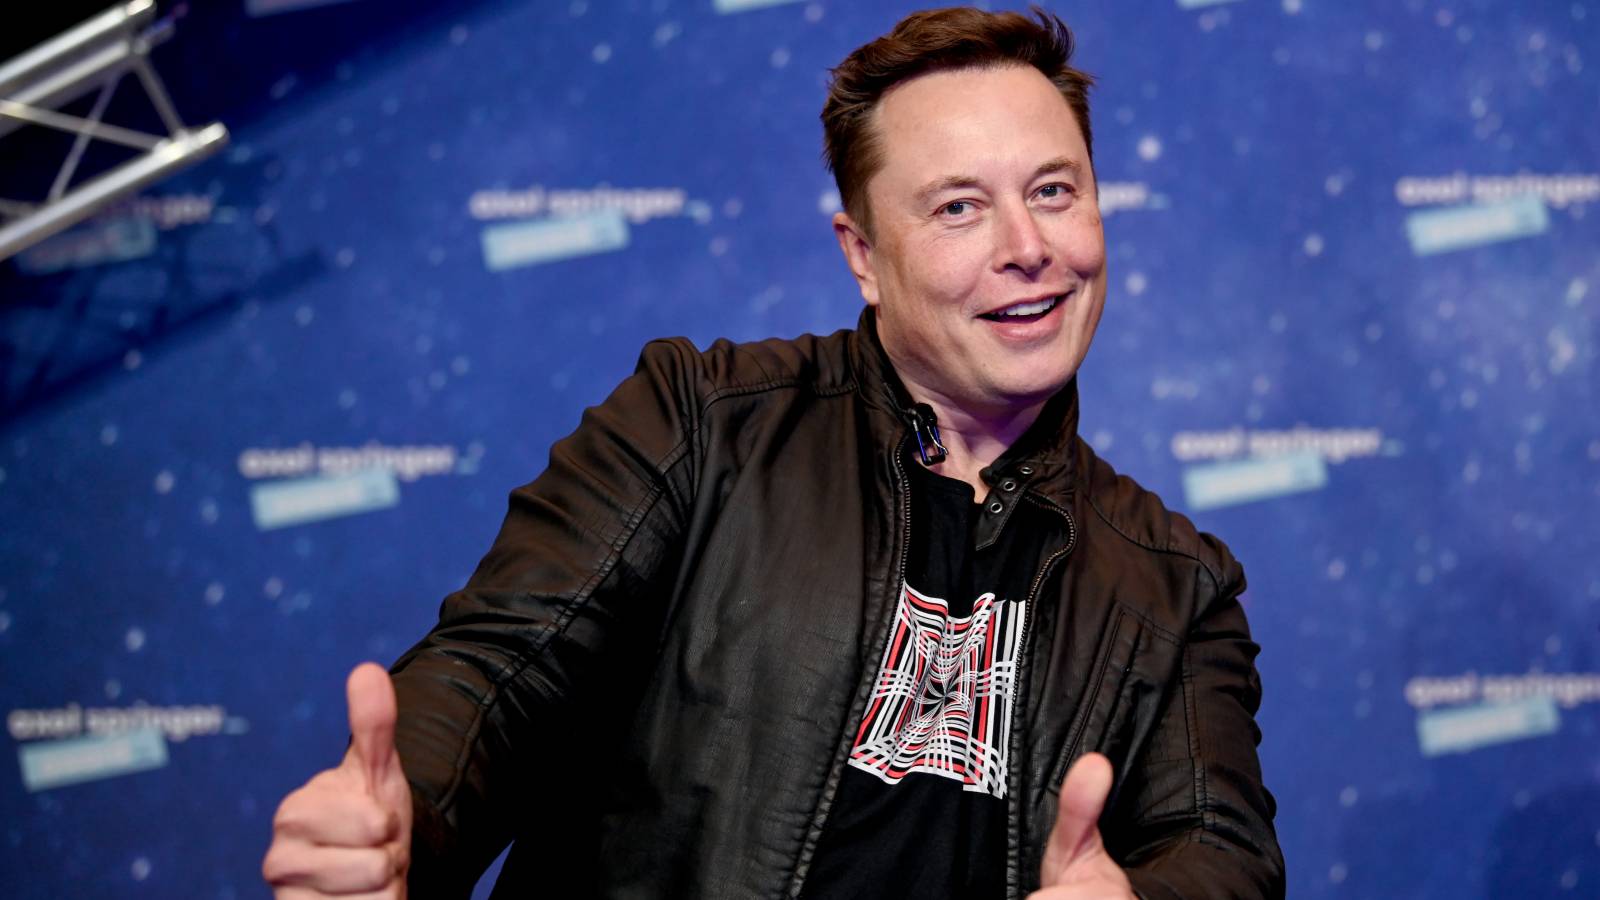 Elon Musk weigert sich, die Ukraine zu unterstützen und verlangt Zahlung für Starlink-Terminals